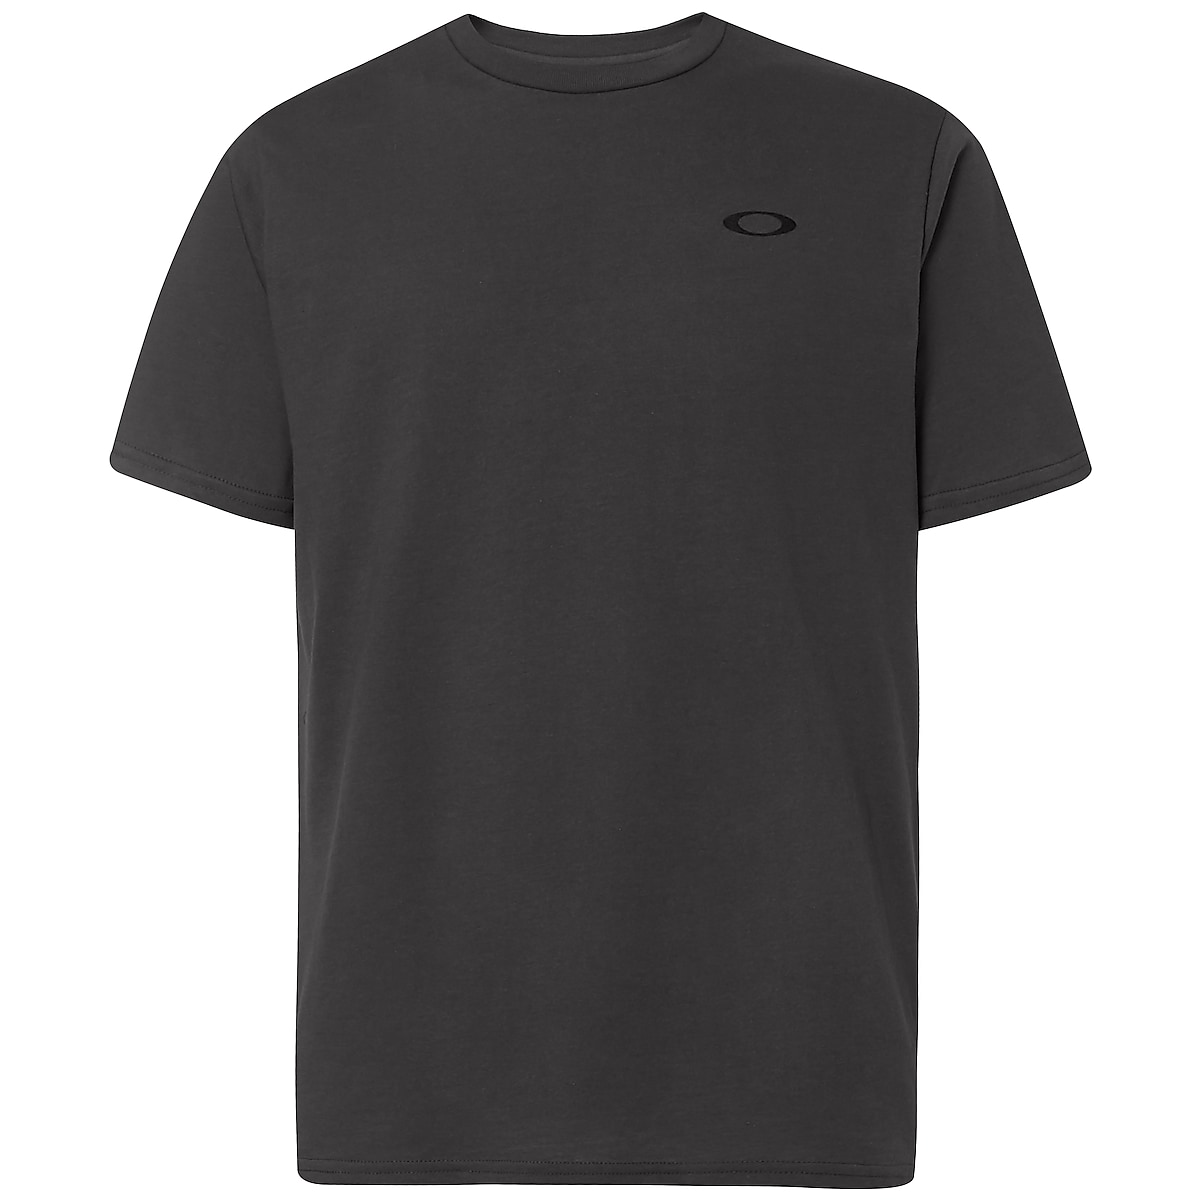 Oakley - T-shirt